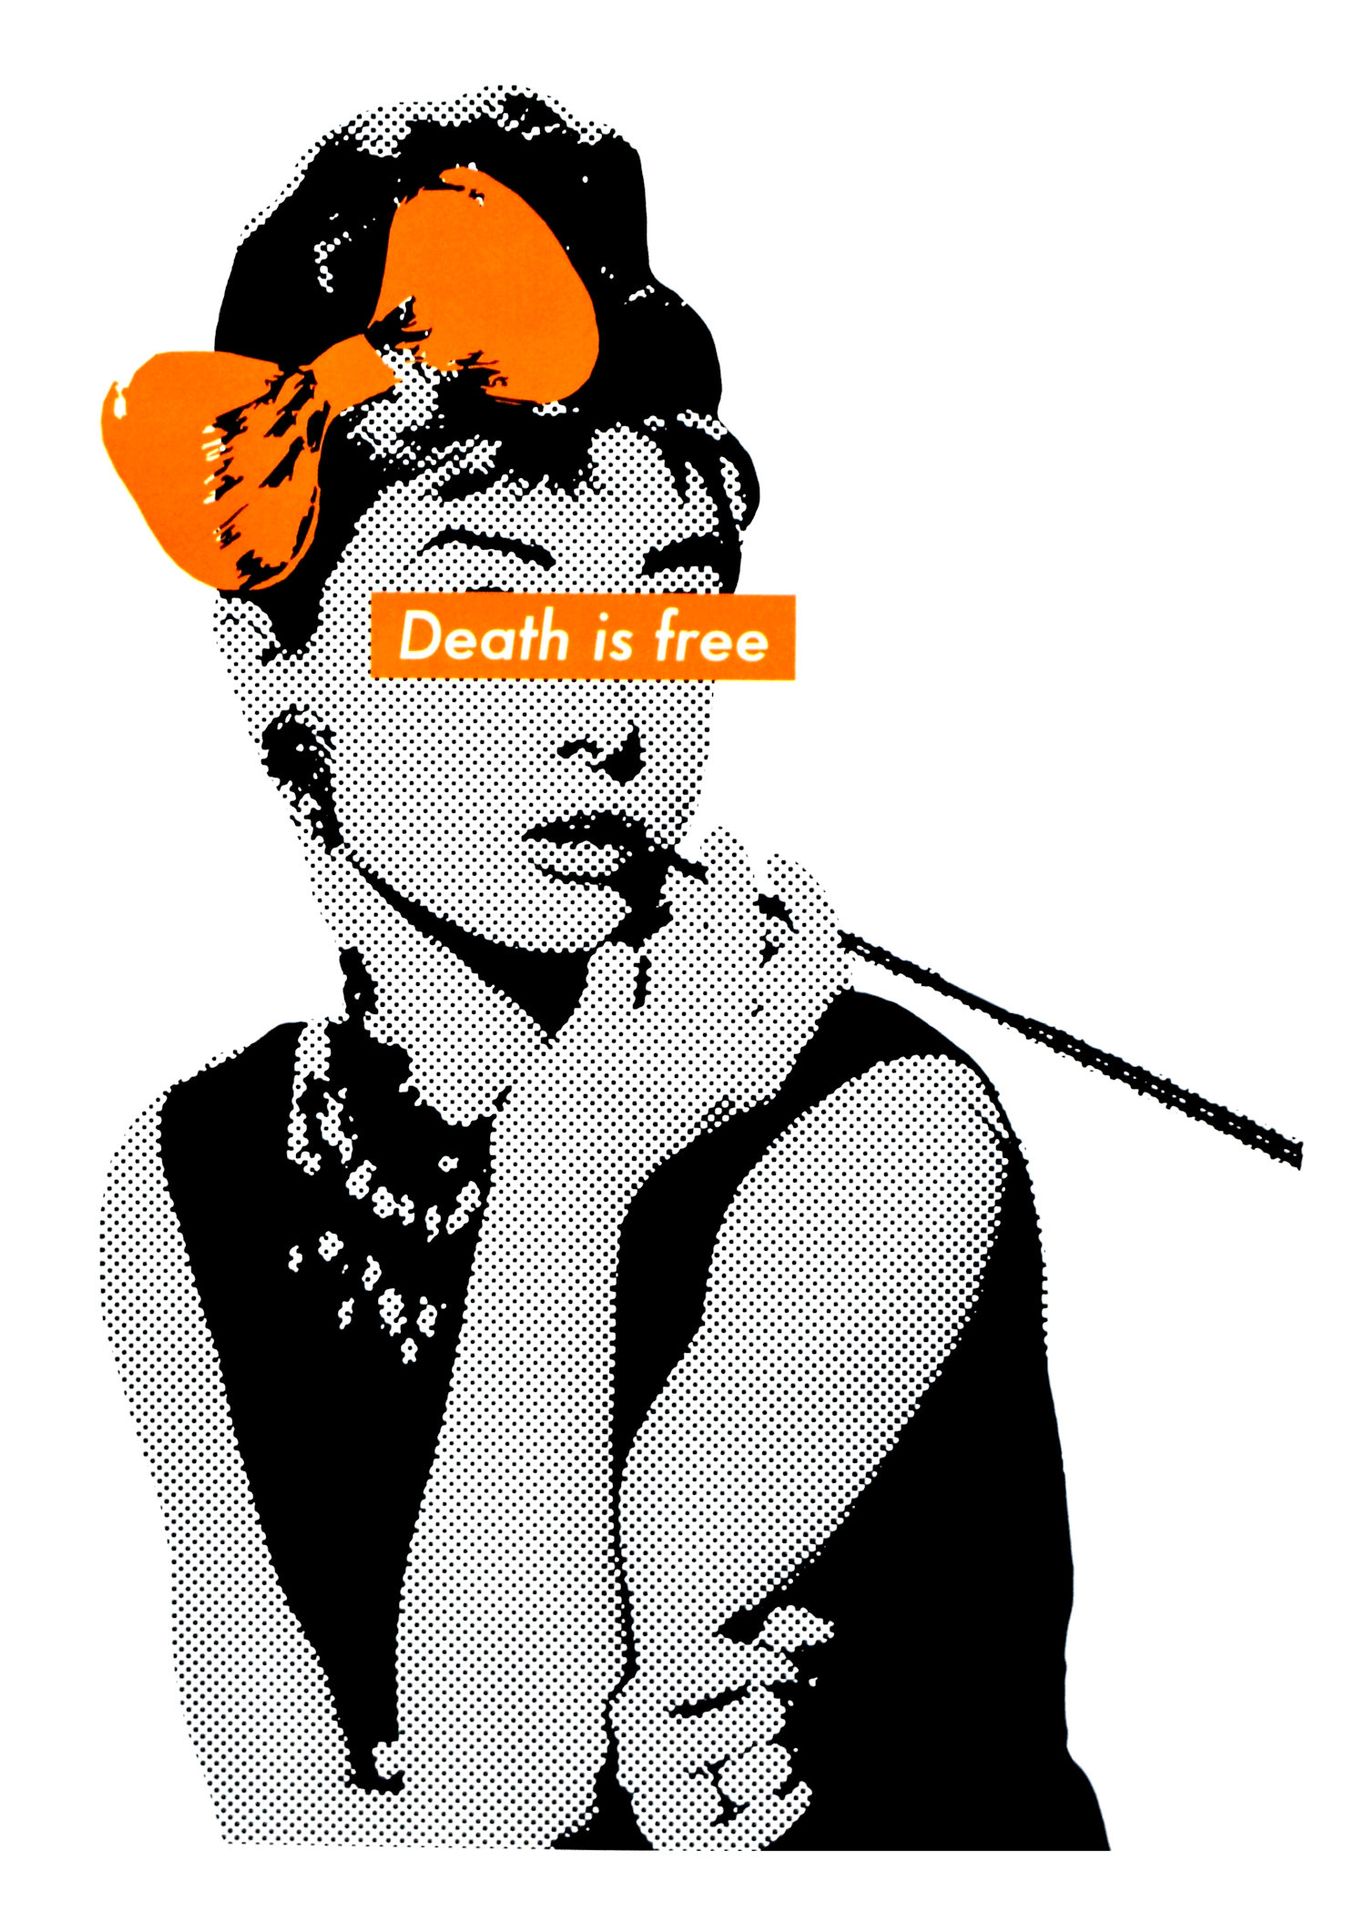 Death NYC Tod NYC

Audrey Offset Orange 2015

Siebdruck.

Limitierte Auflage von&hellip;